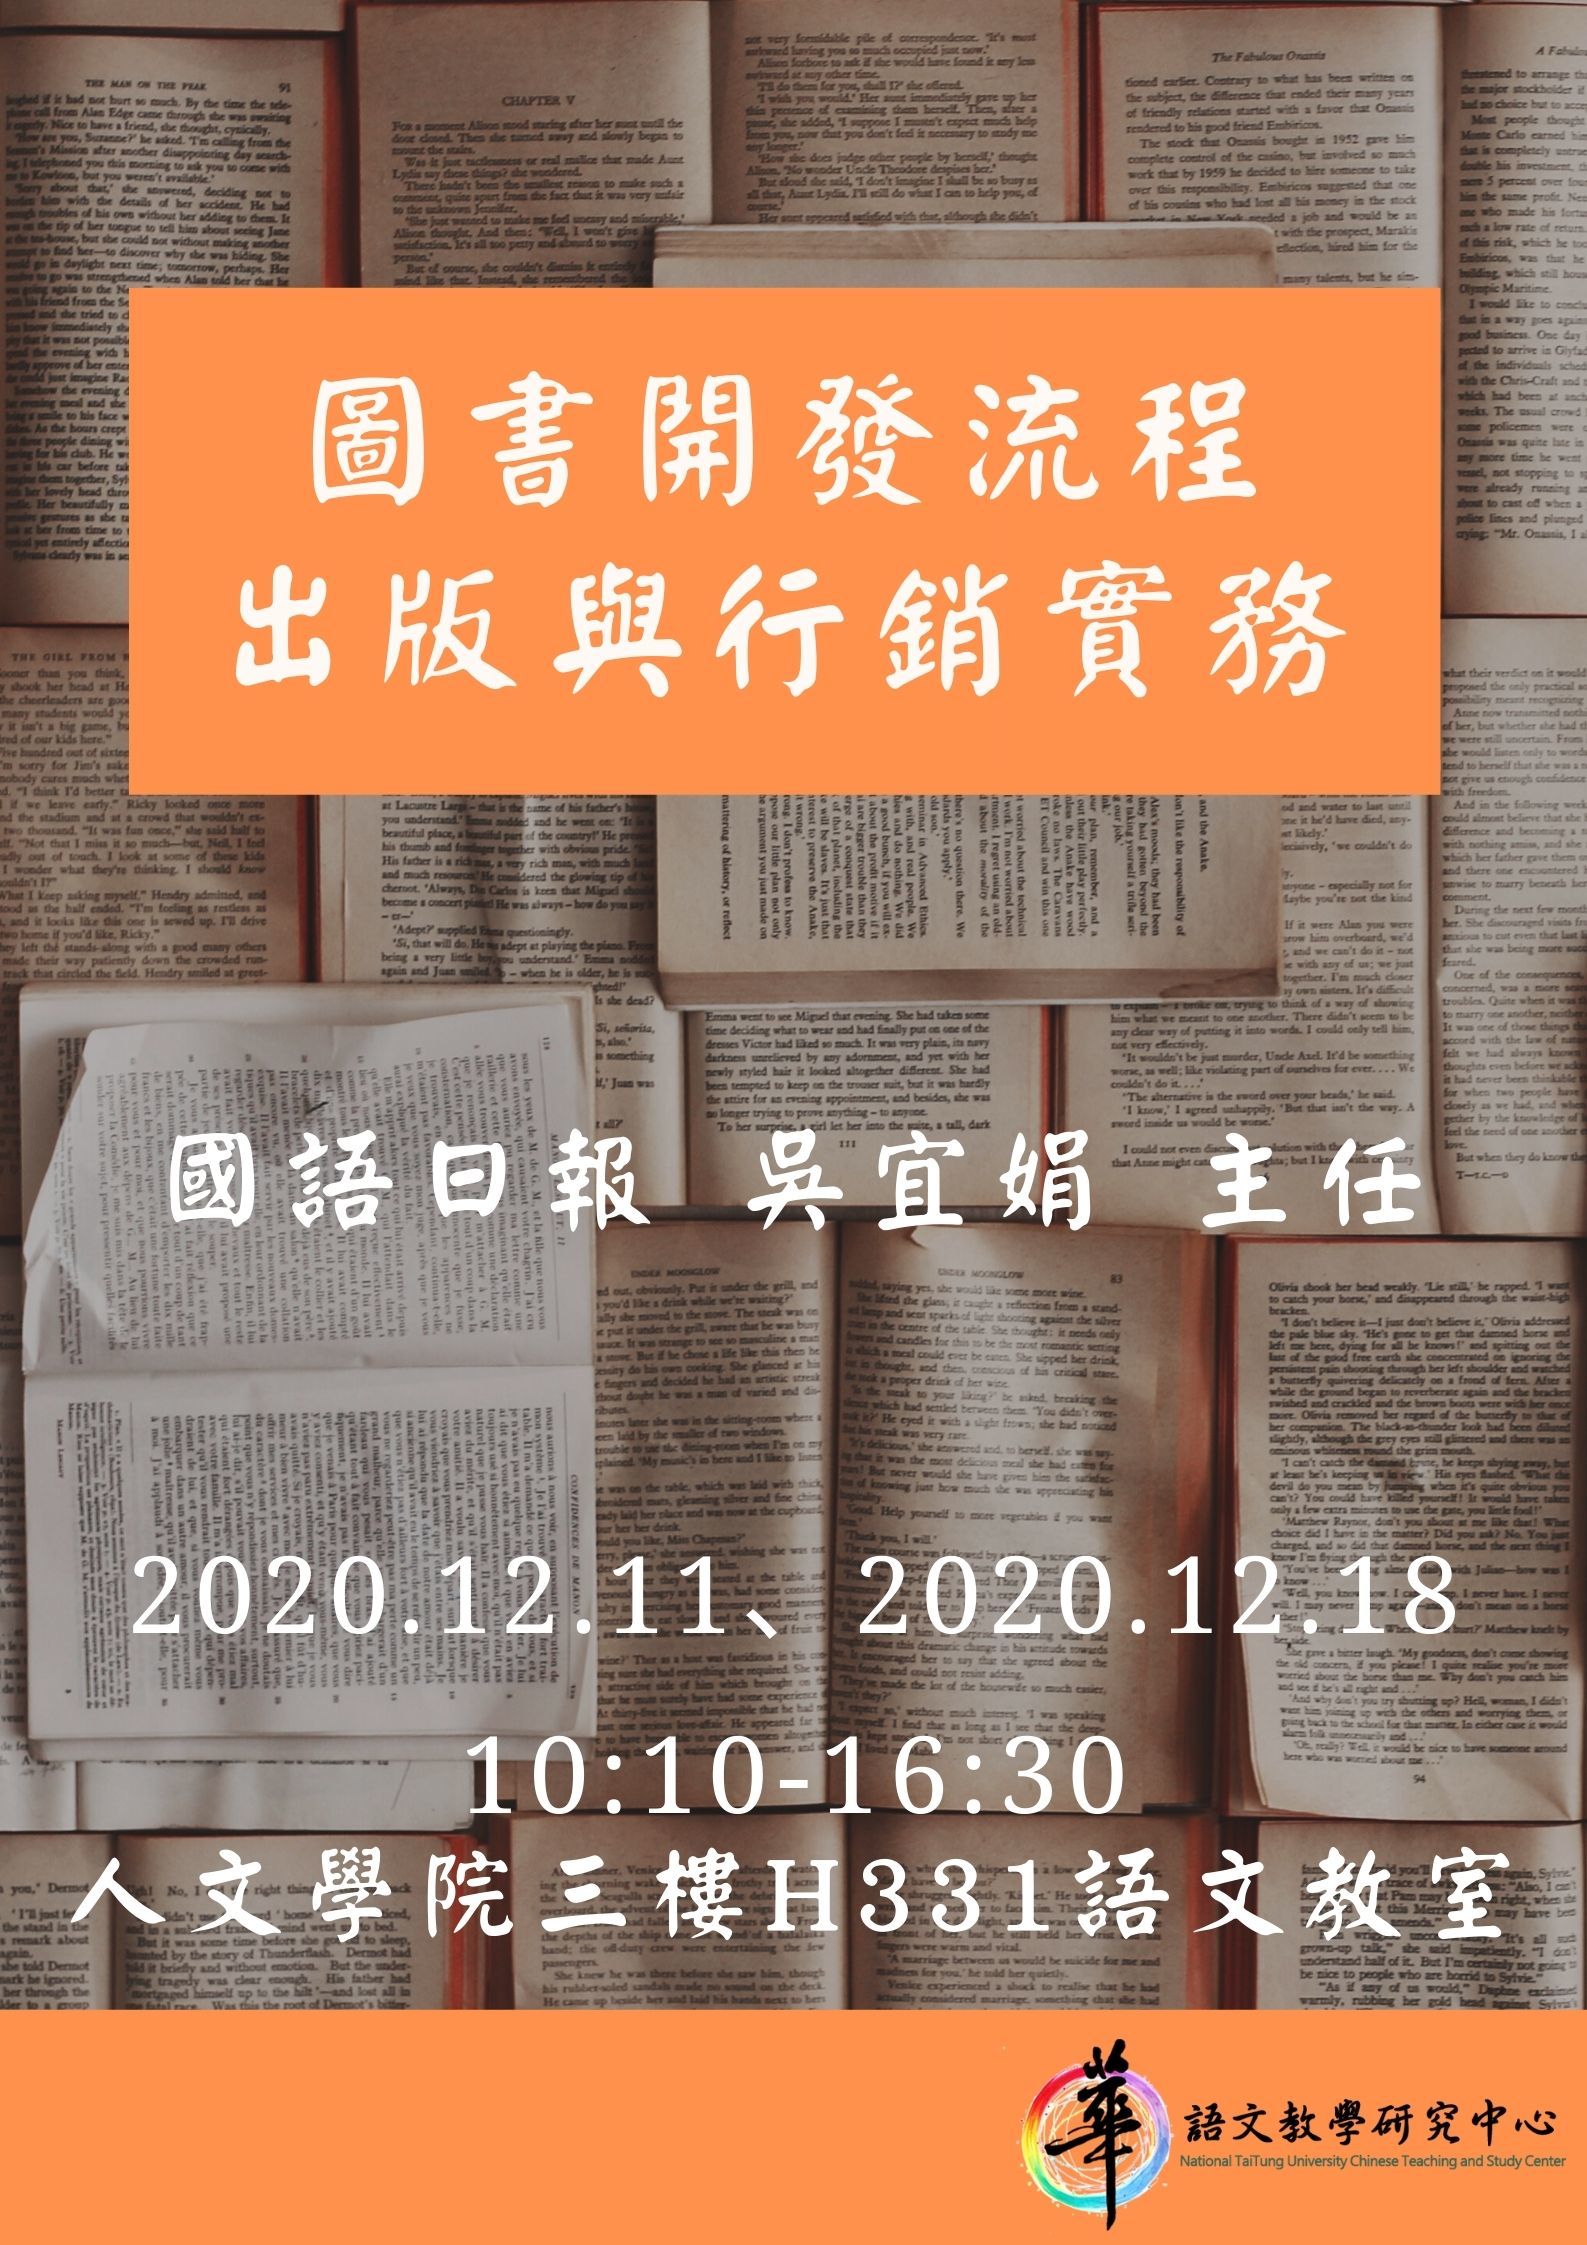 【華語中心】109學年度華語文雲端數位編輯學程講座「圖書開發流程、出版與行銷實務」 ，講座時間：2020.12.11(五)、2020.12.18(五)10:10-16:30。